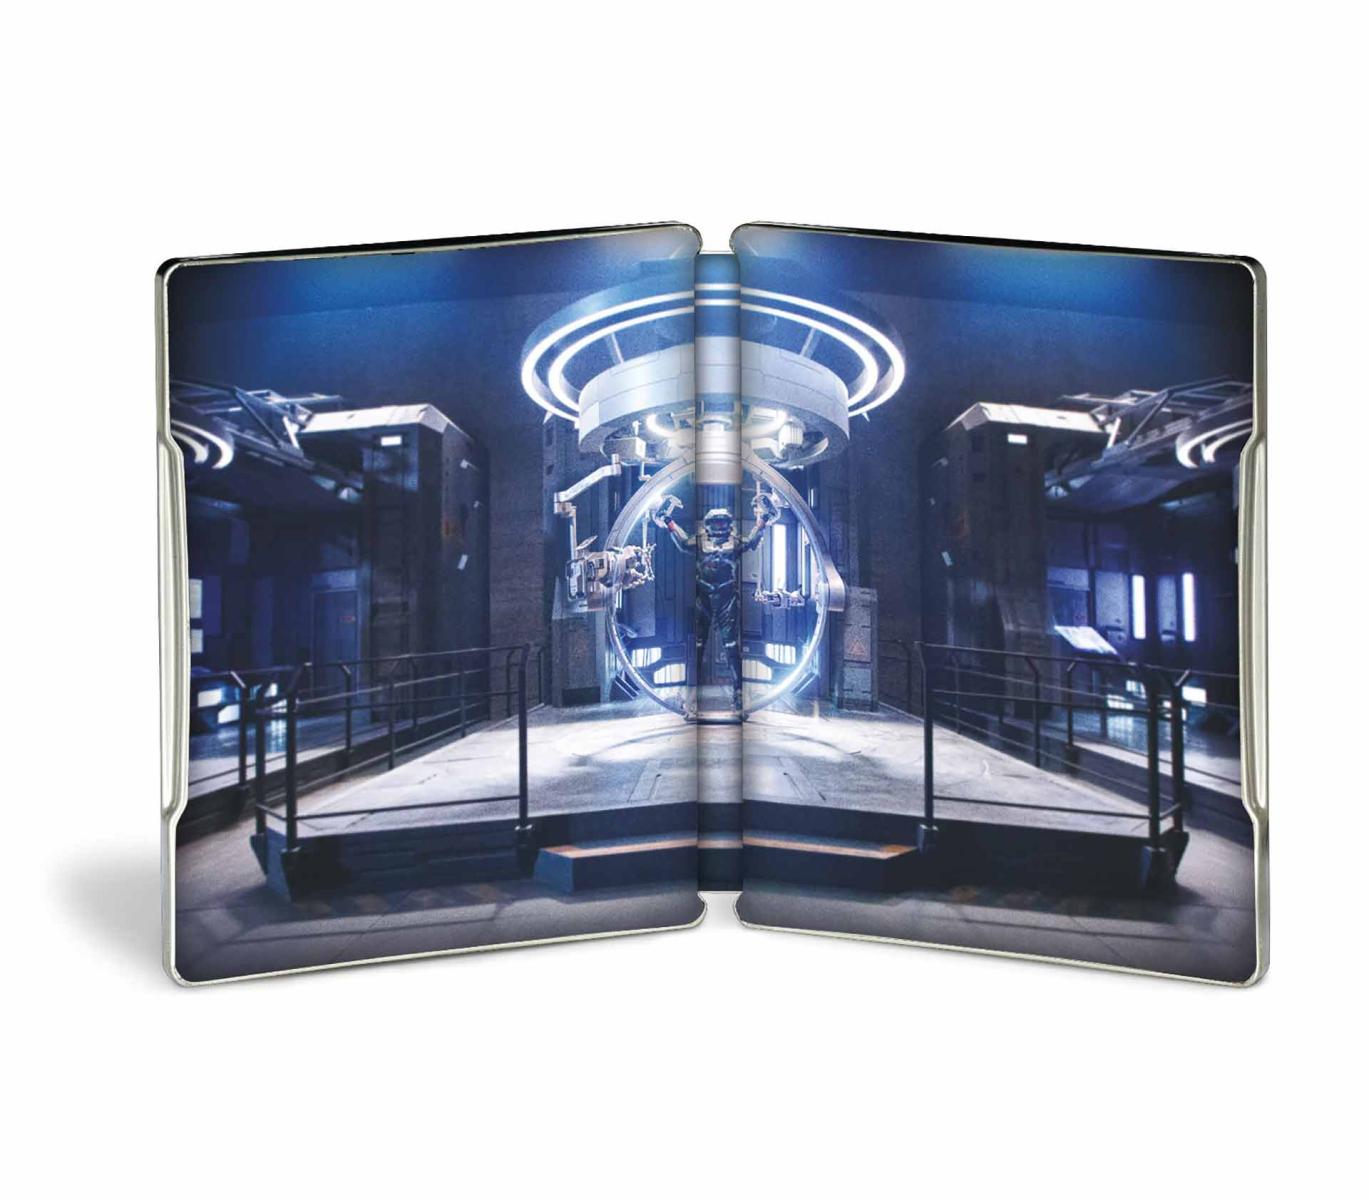 Halo - Stagione 1 - Steelbook 5 4K Ultra HD + 7 Cards da Collezione + Xbox Game Pass (Blu-ray) Image 13